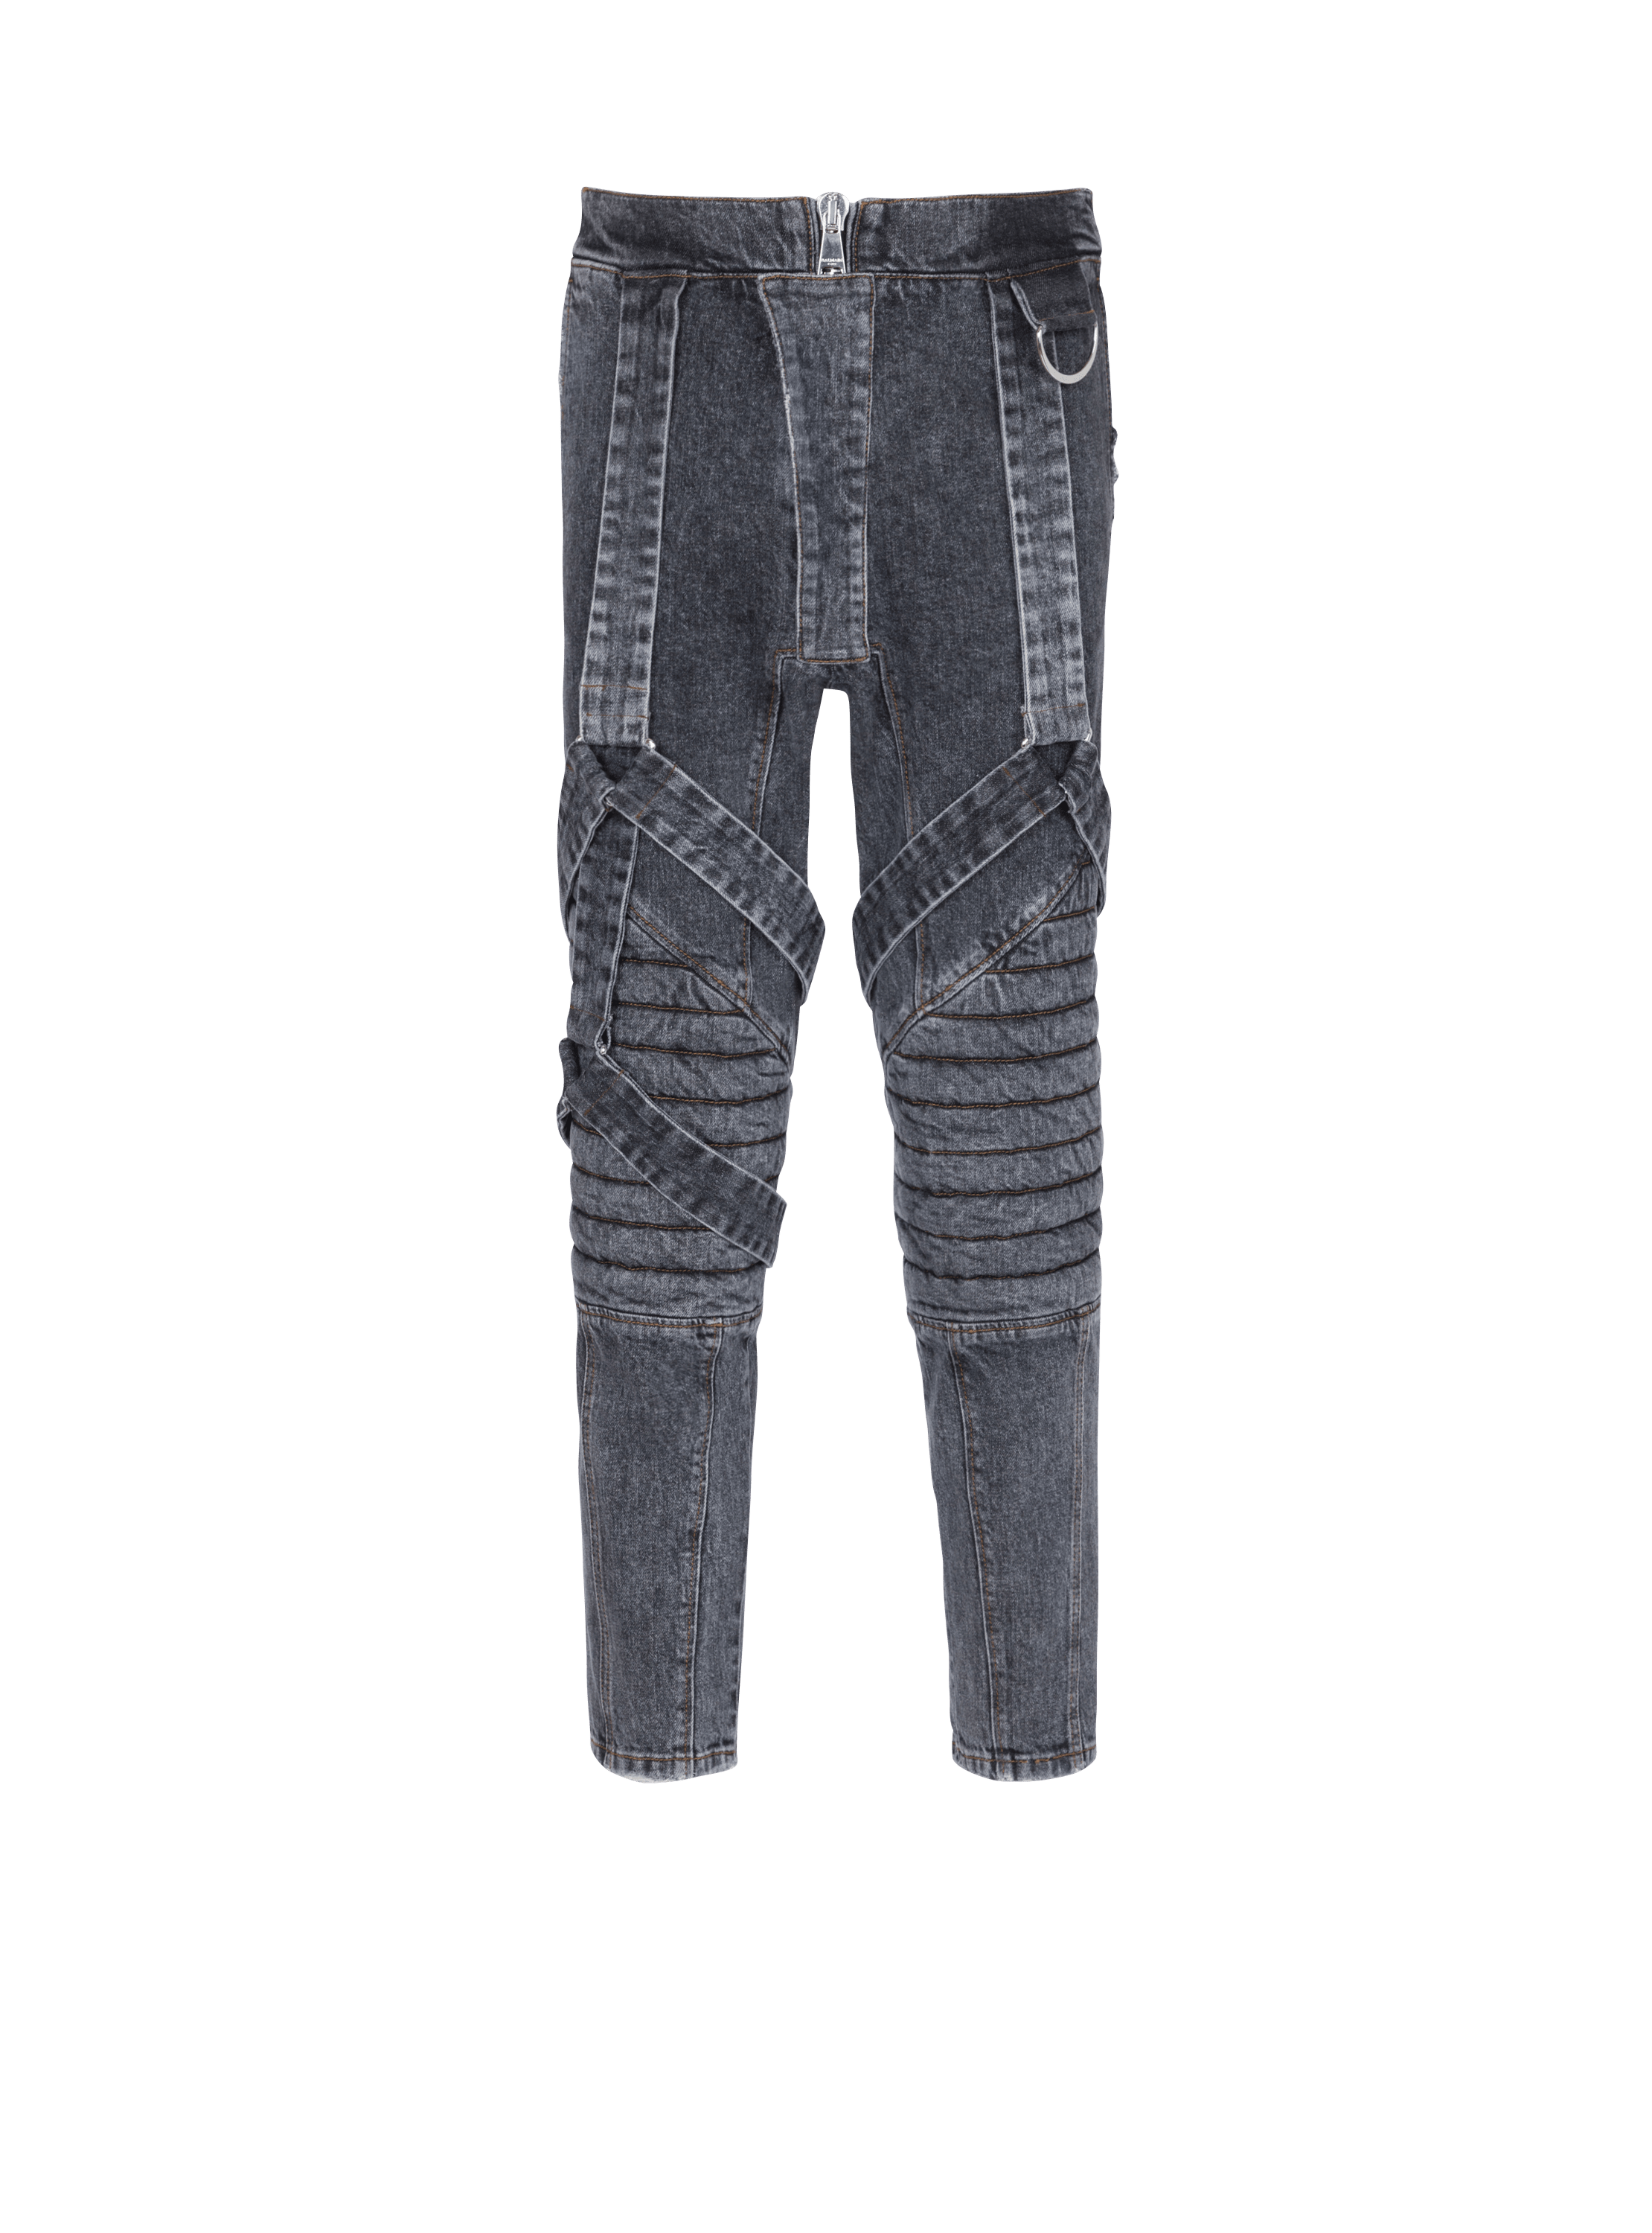 Cotton slim-fit jeans with straps, black, hi-res